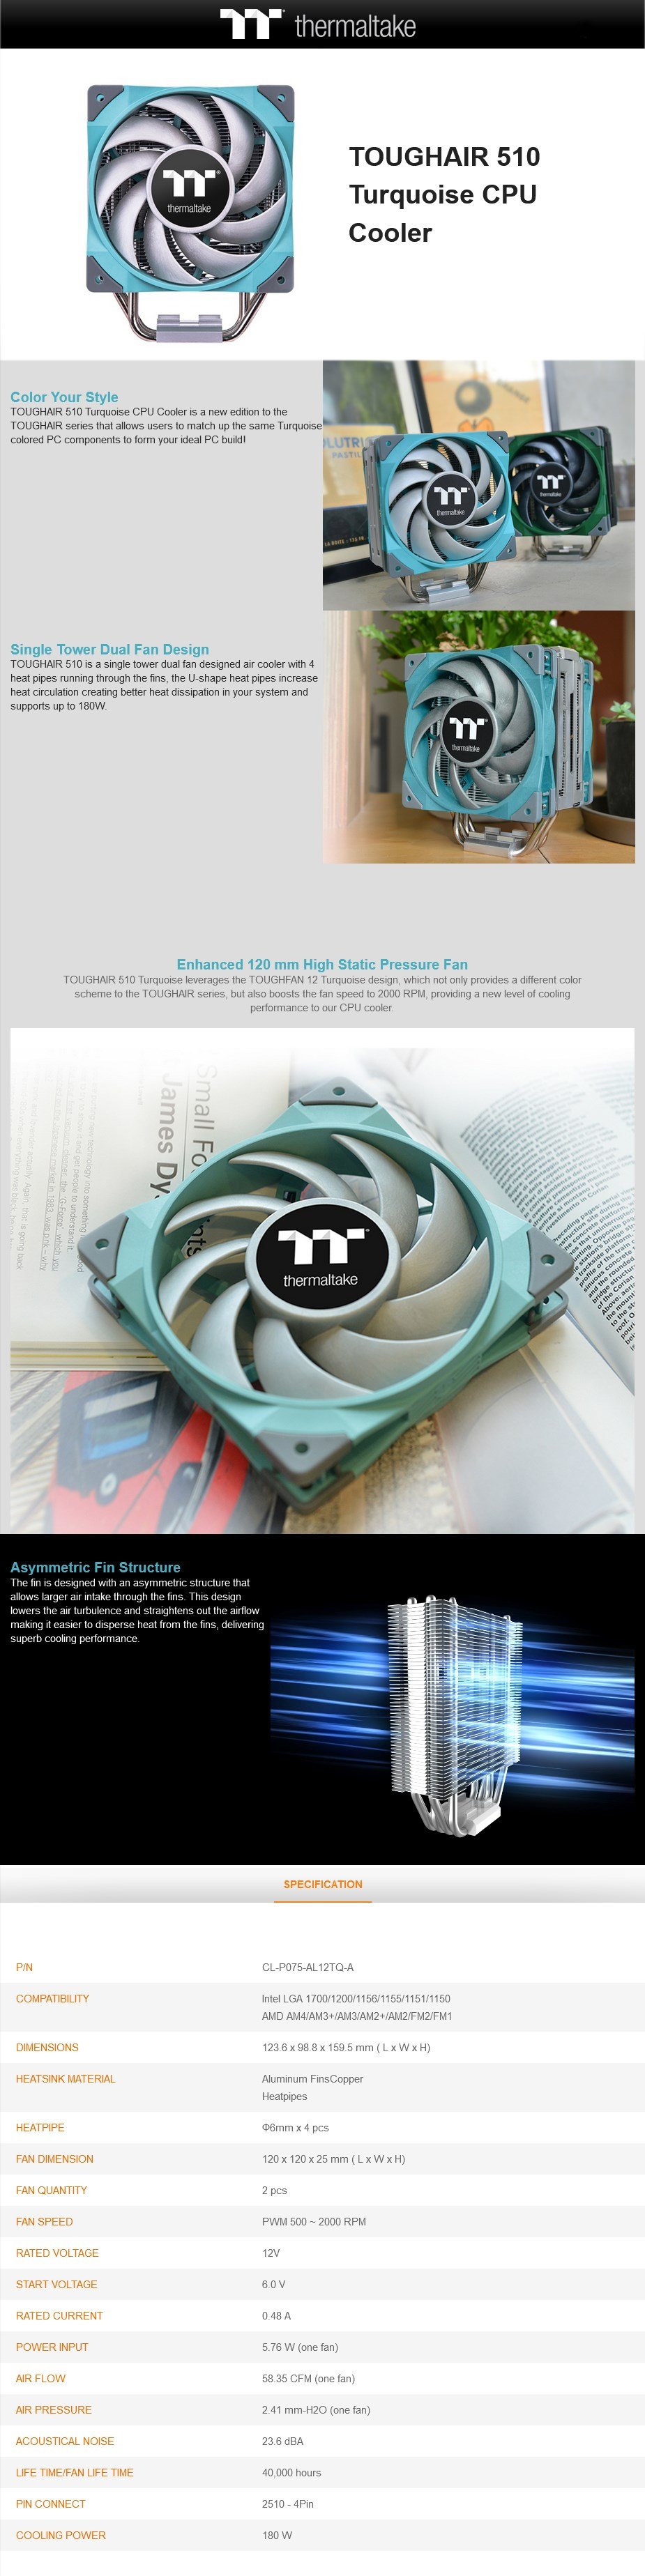 thermaltake-toughair-510-dual-fan-cpu-cooler-turquoise-ac52252-6.jpg